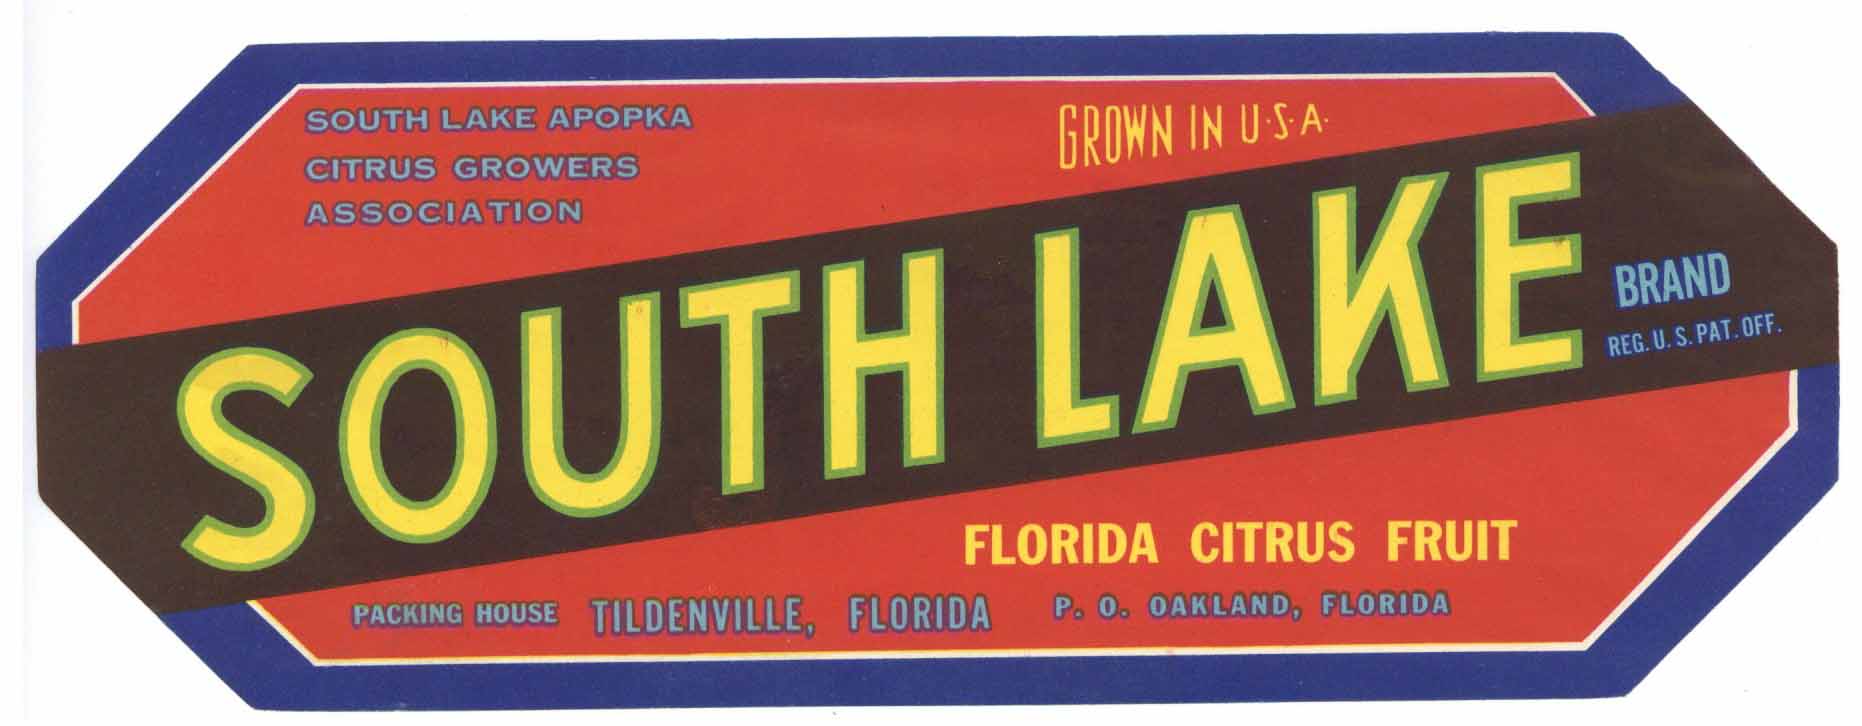 South Lake Brand Vintage Oakland Florida Citrus Crate Label, str